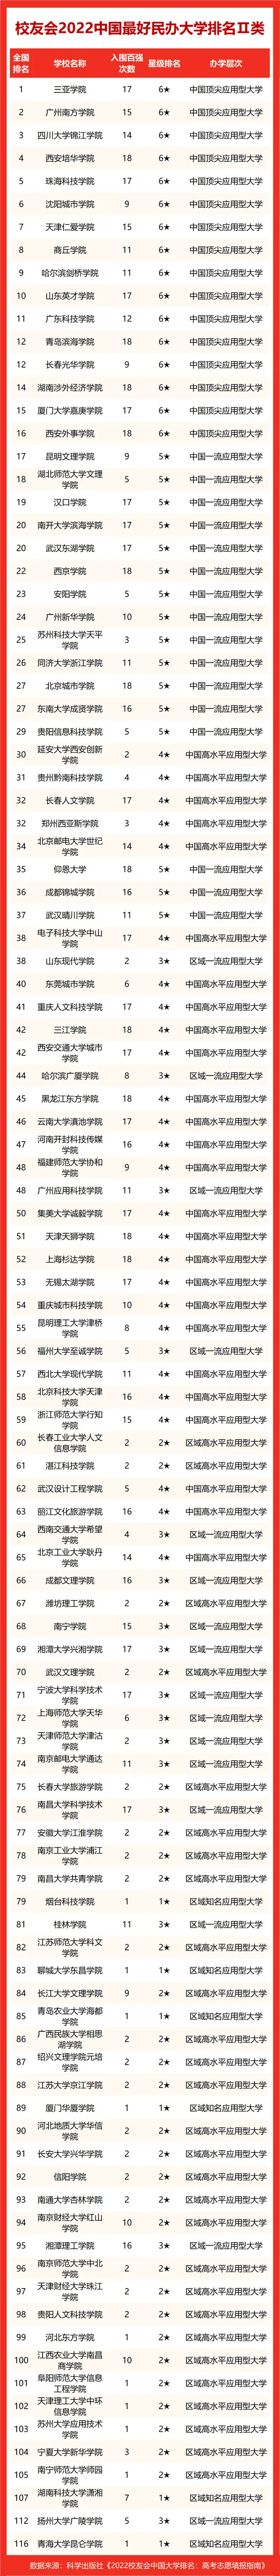 中国大学排名_中国大学排名qs_中国大学排行qs